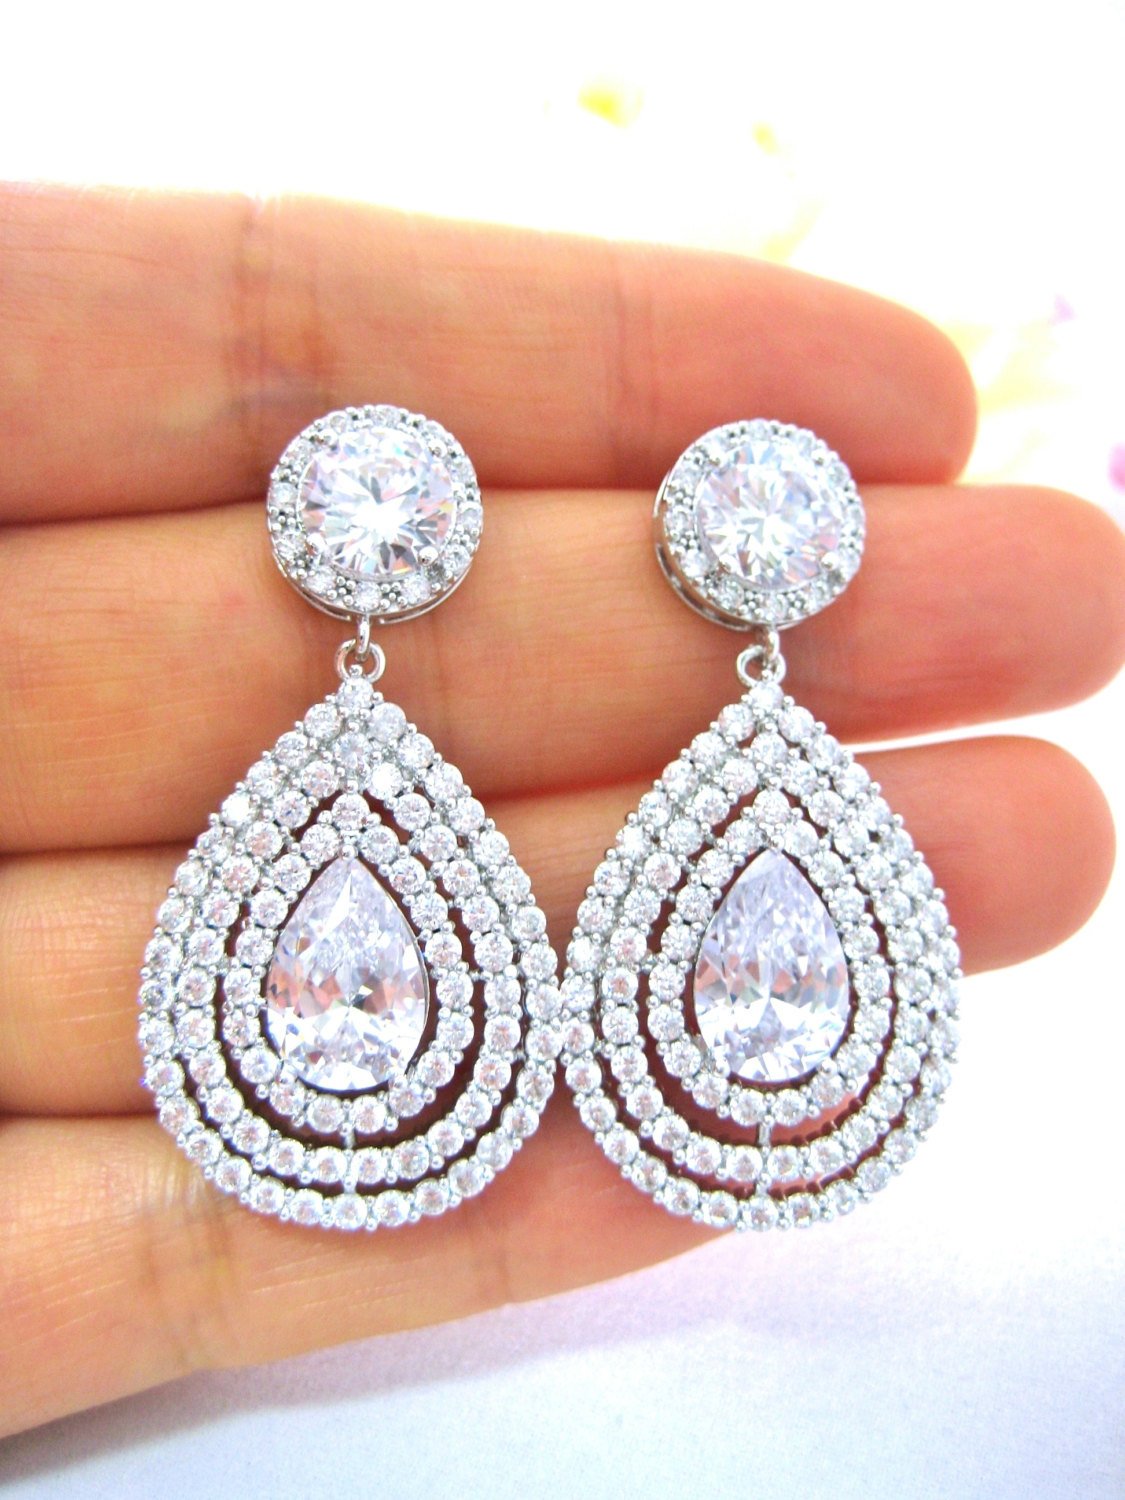 Bridal Earrings Teardrop Earrings Halo Style Earrings Cubic Zirconia Earrings Wedding Jewelry Bridesmaid Gift Multi-stone Earrings (e219)